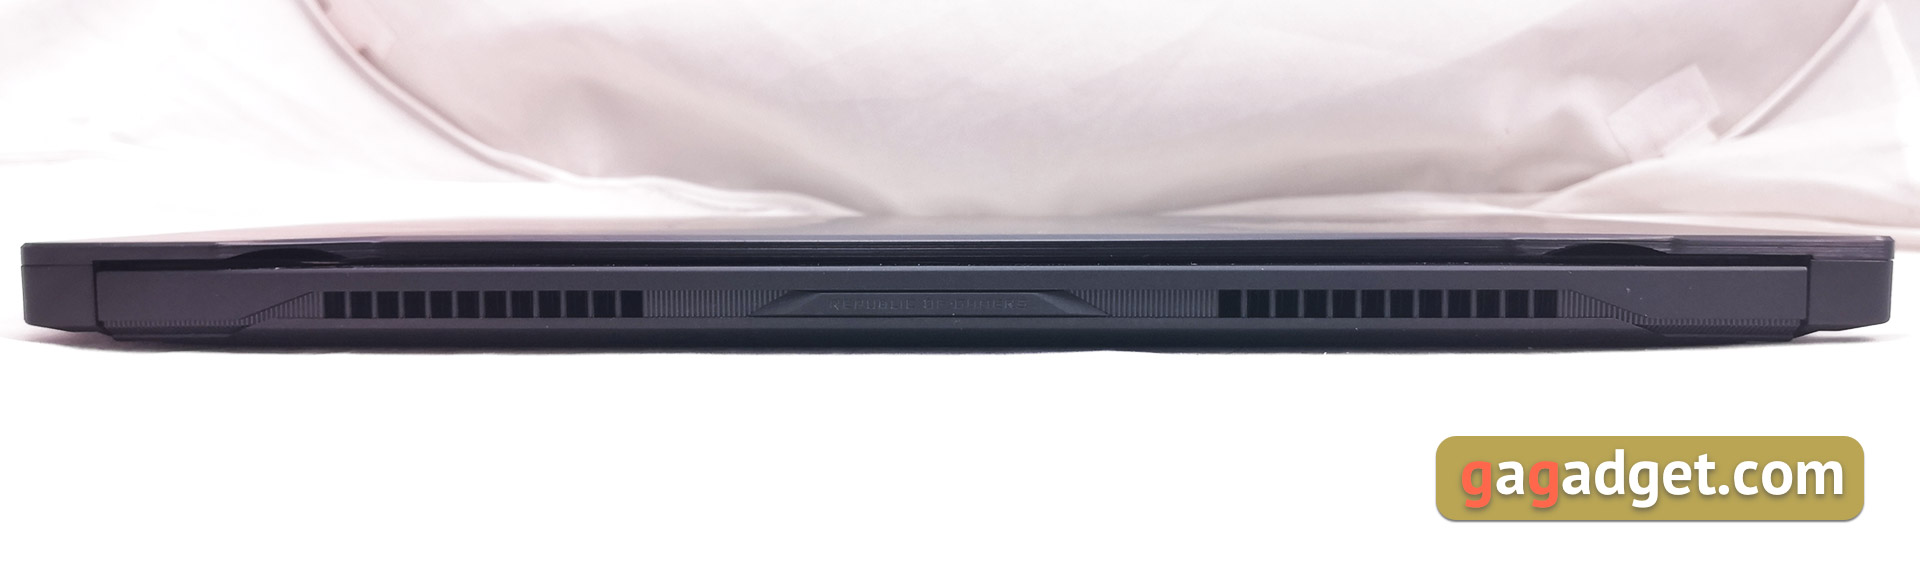 Обзор ASUS ROG Zephyrus S GX502GW: мощный игровой ноутбук с GeForce RTX 2070 весом всего 2 кг-7